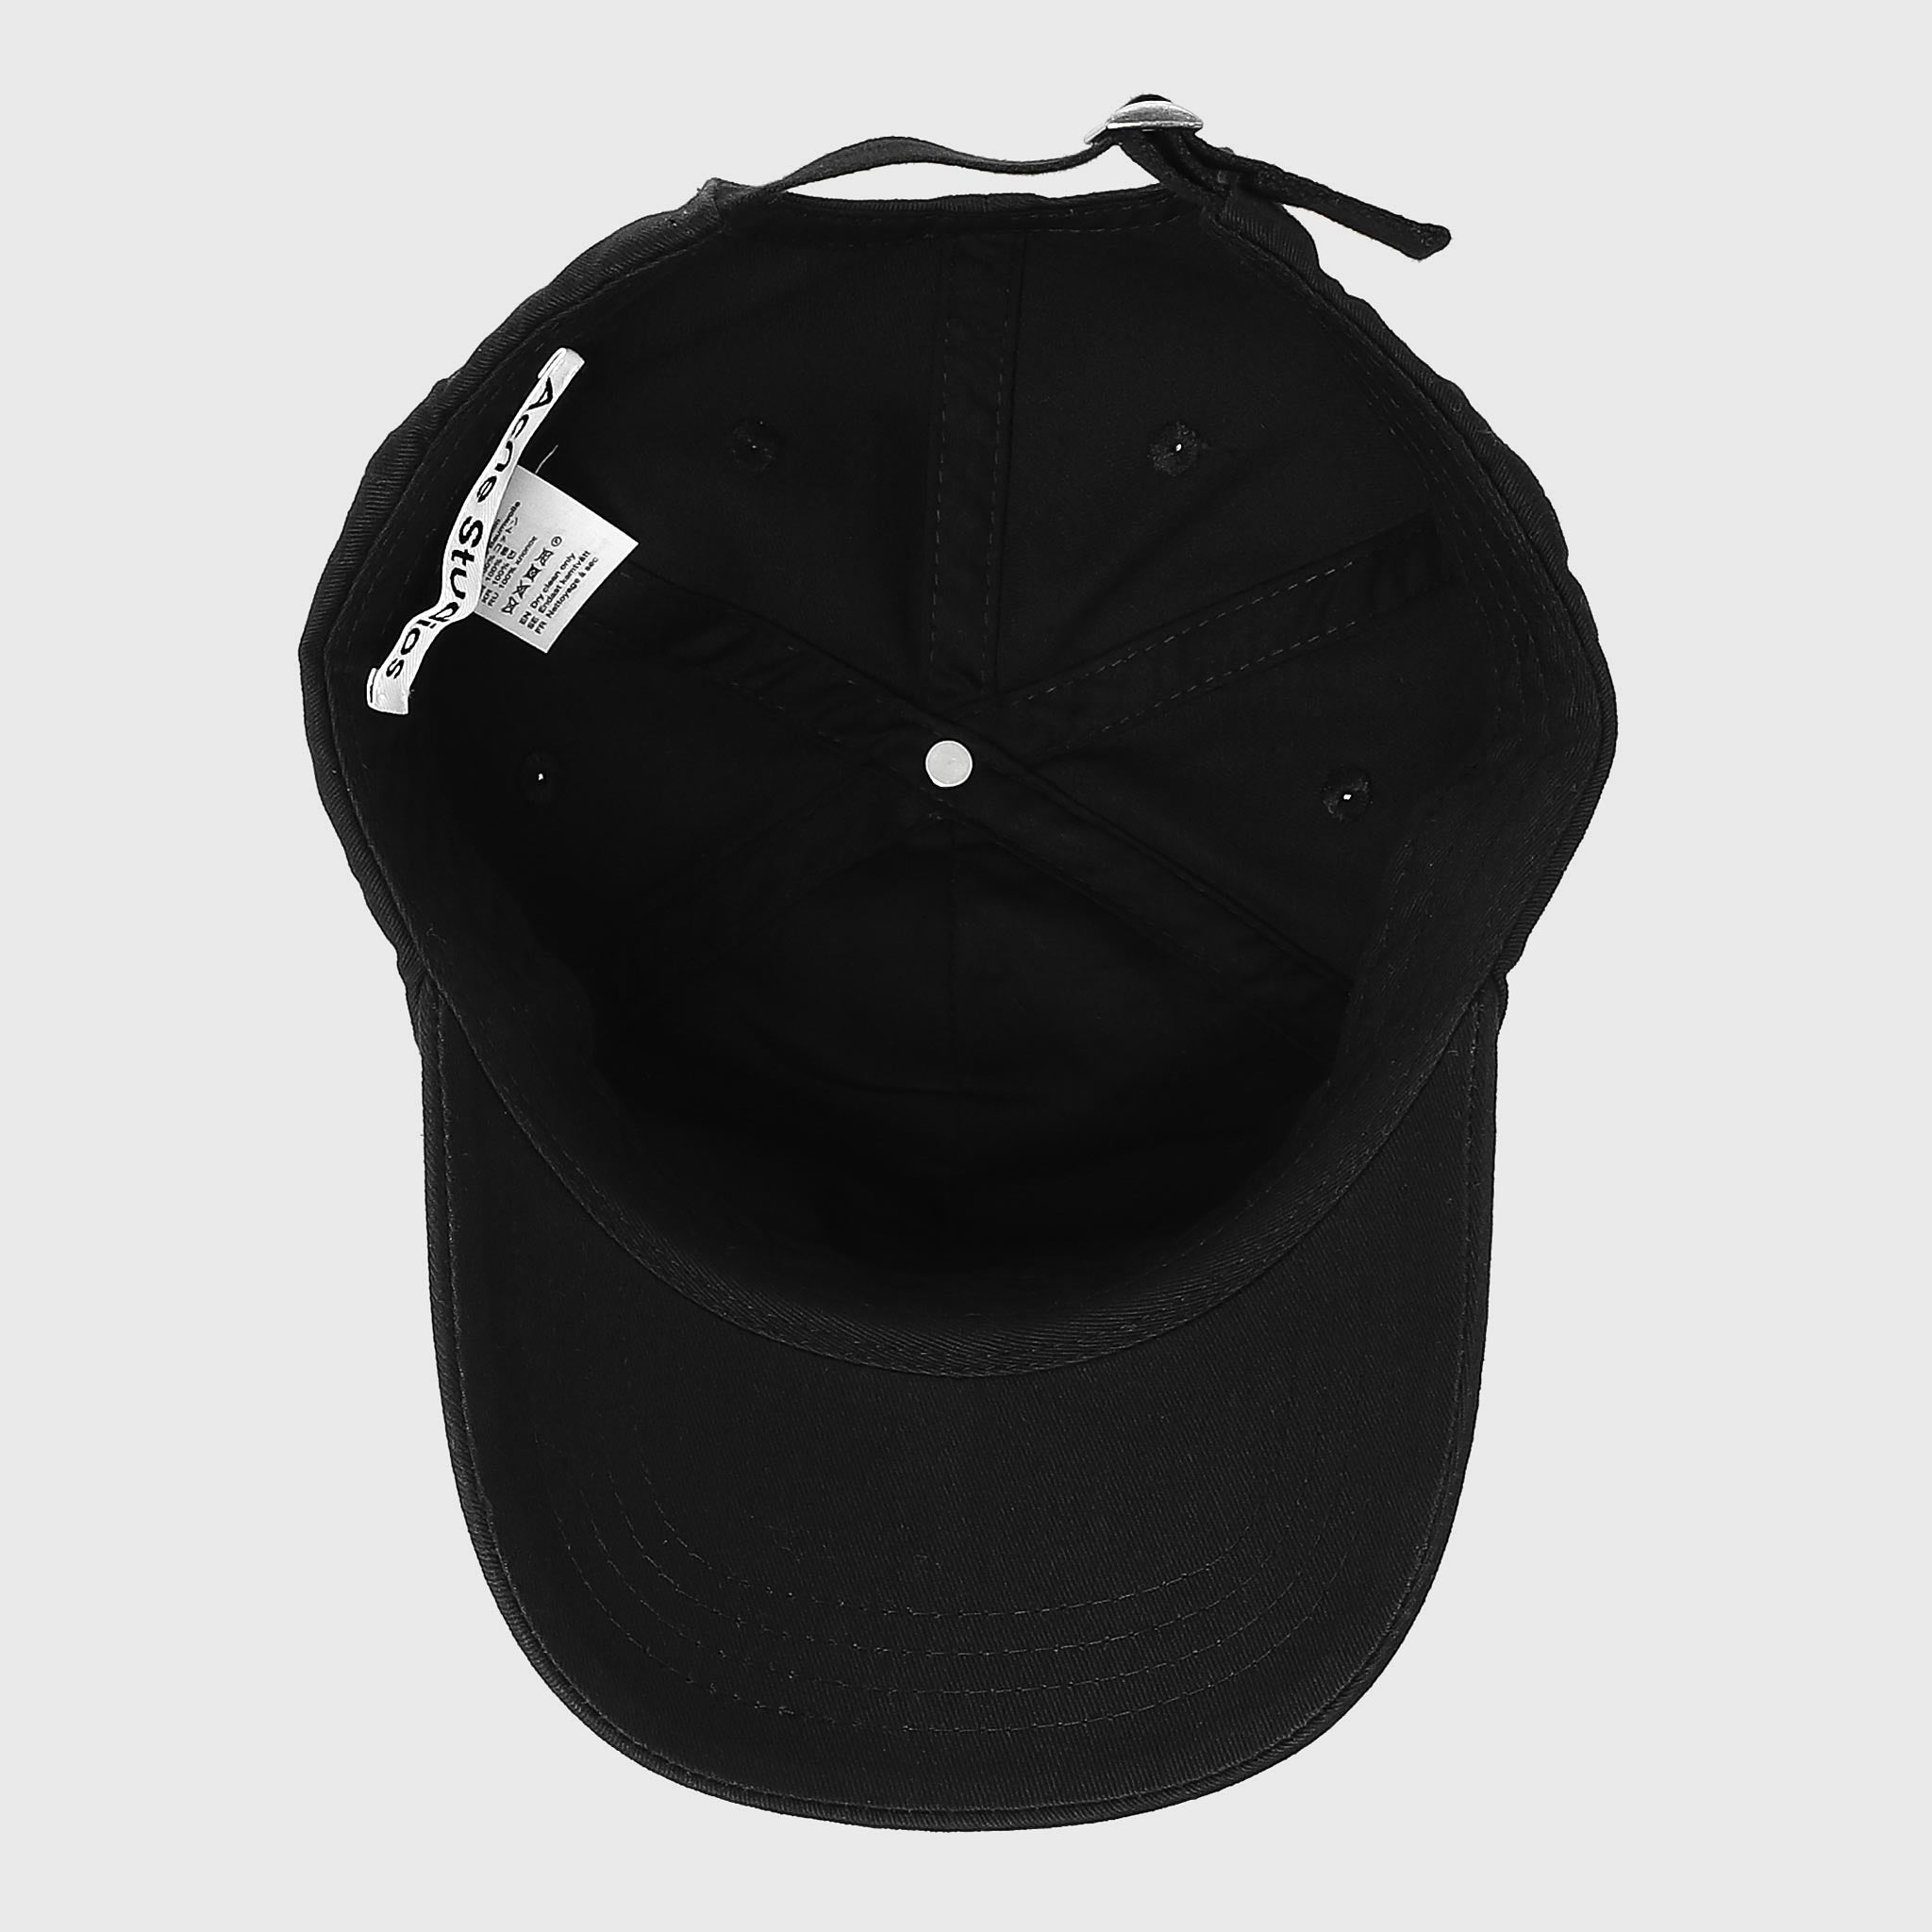 アクネ ストゥディオズ ACNE STUDIO 帽子 レディース メンズ キャップ COTTON BASEBALL CAP FN-UX-HATS000148 C40224